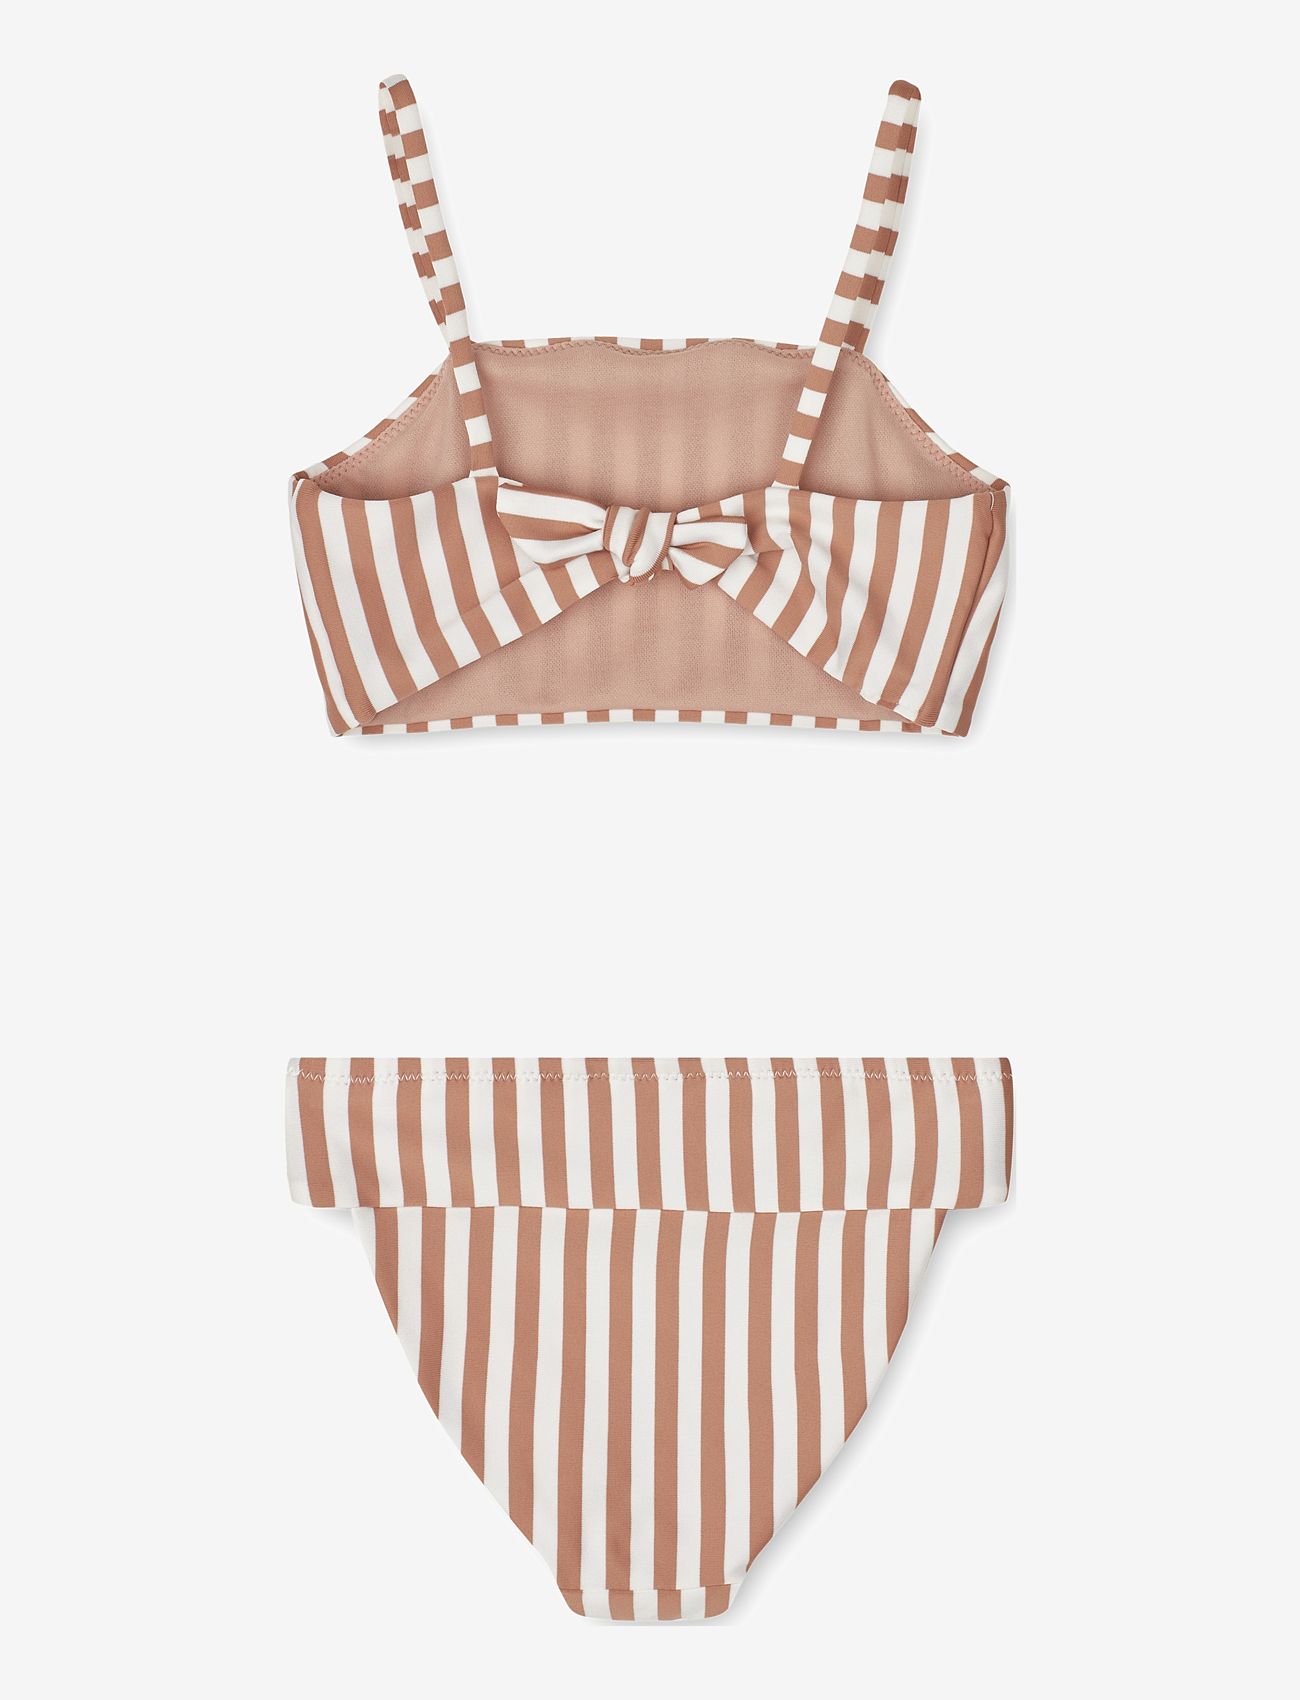 Liewood - Lucette bikini set - sommerschnäppchen - stripe tuscany rose / crème de la c - 1